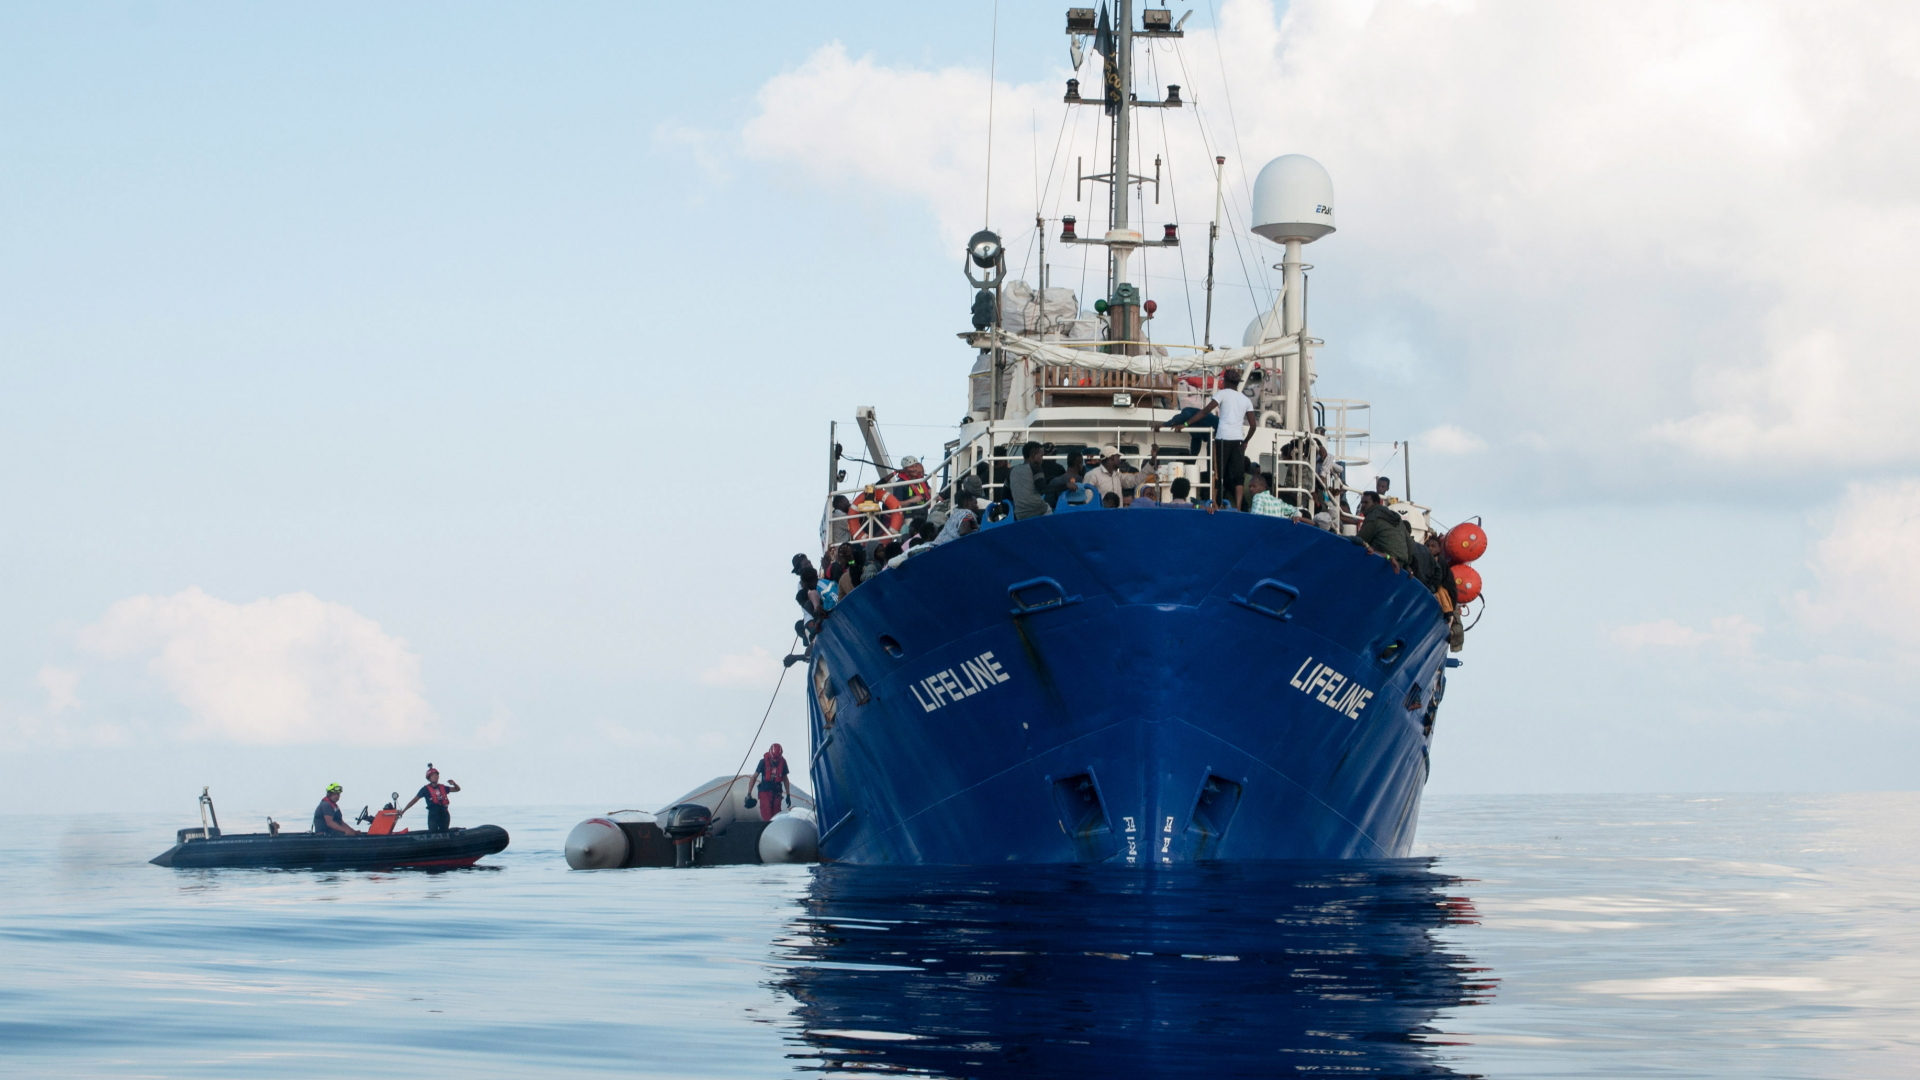 Italien sperrt Hafen für Rettungsschiff “Lifeline”